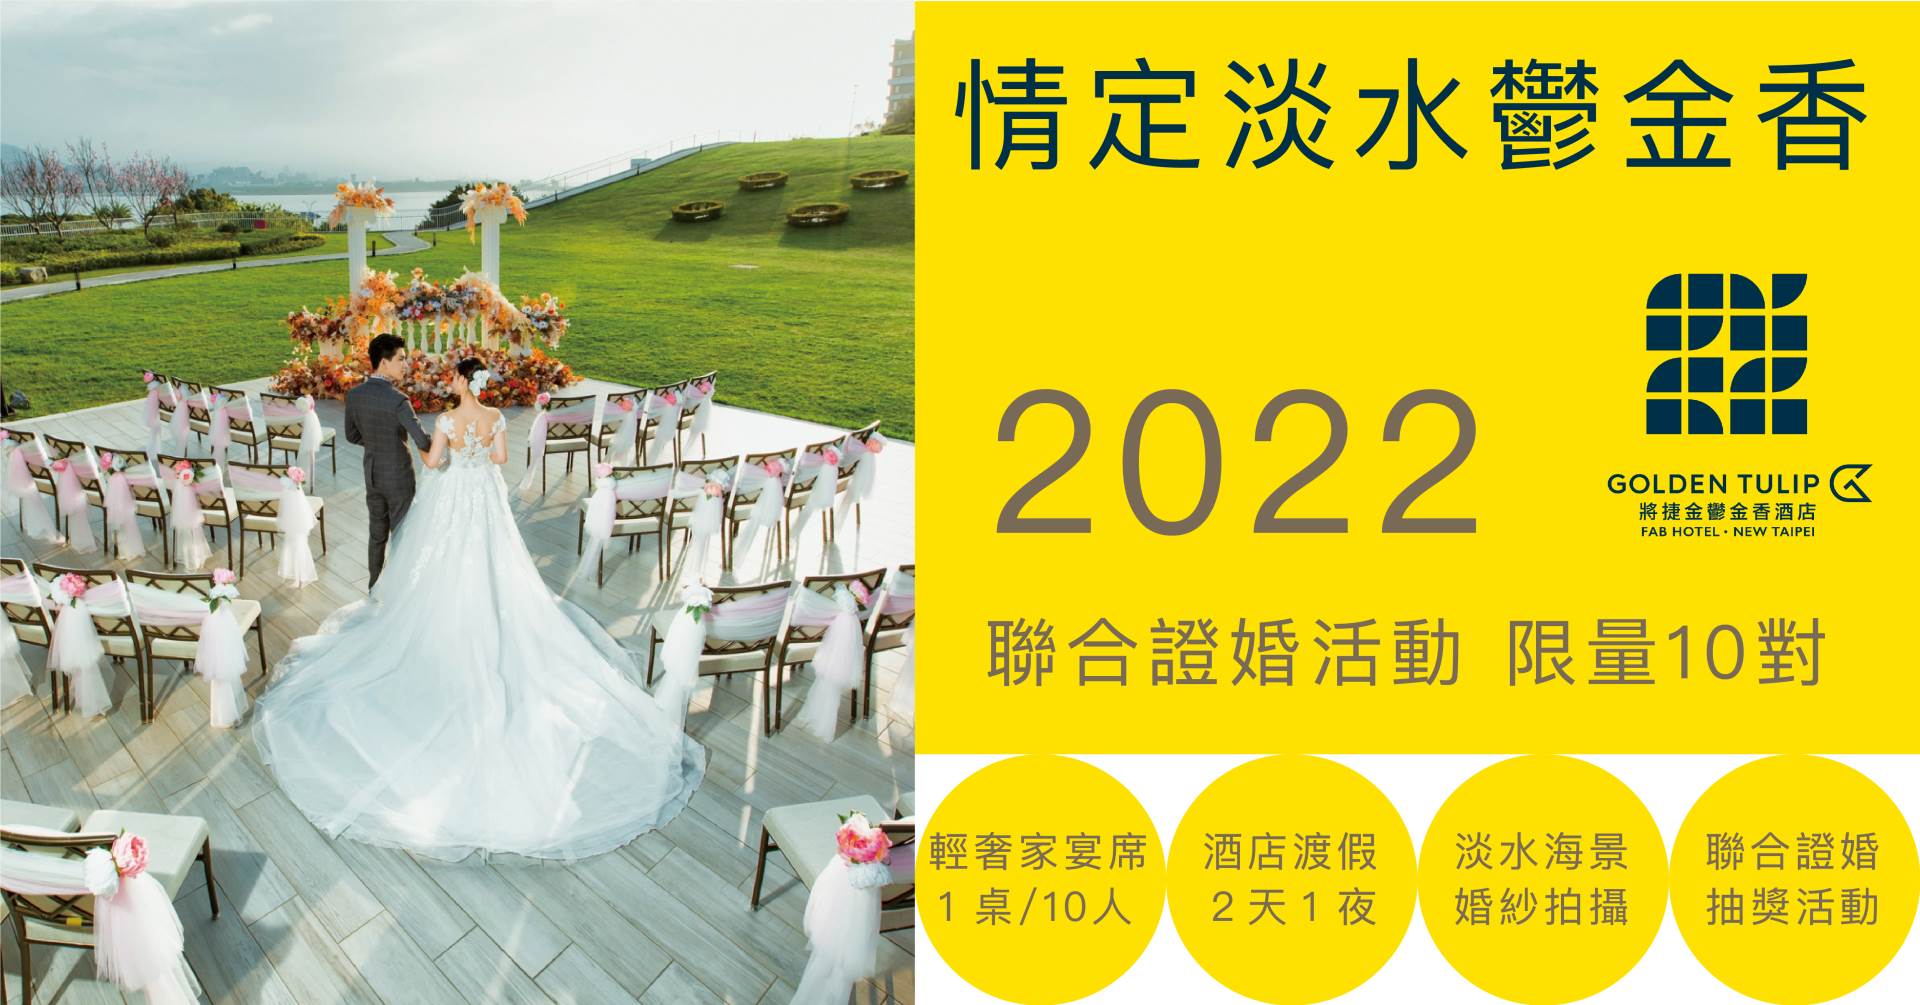 聯合證婚/聯合婚禮2022/集團結婚2022/集團結婚2022